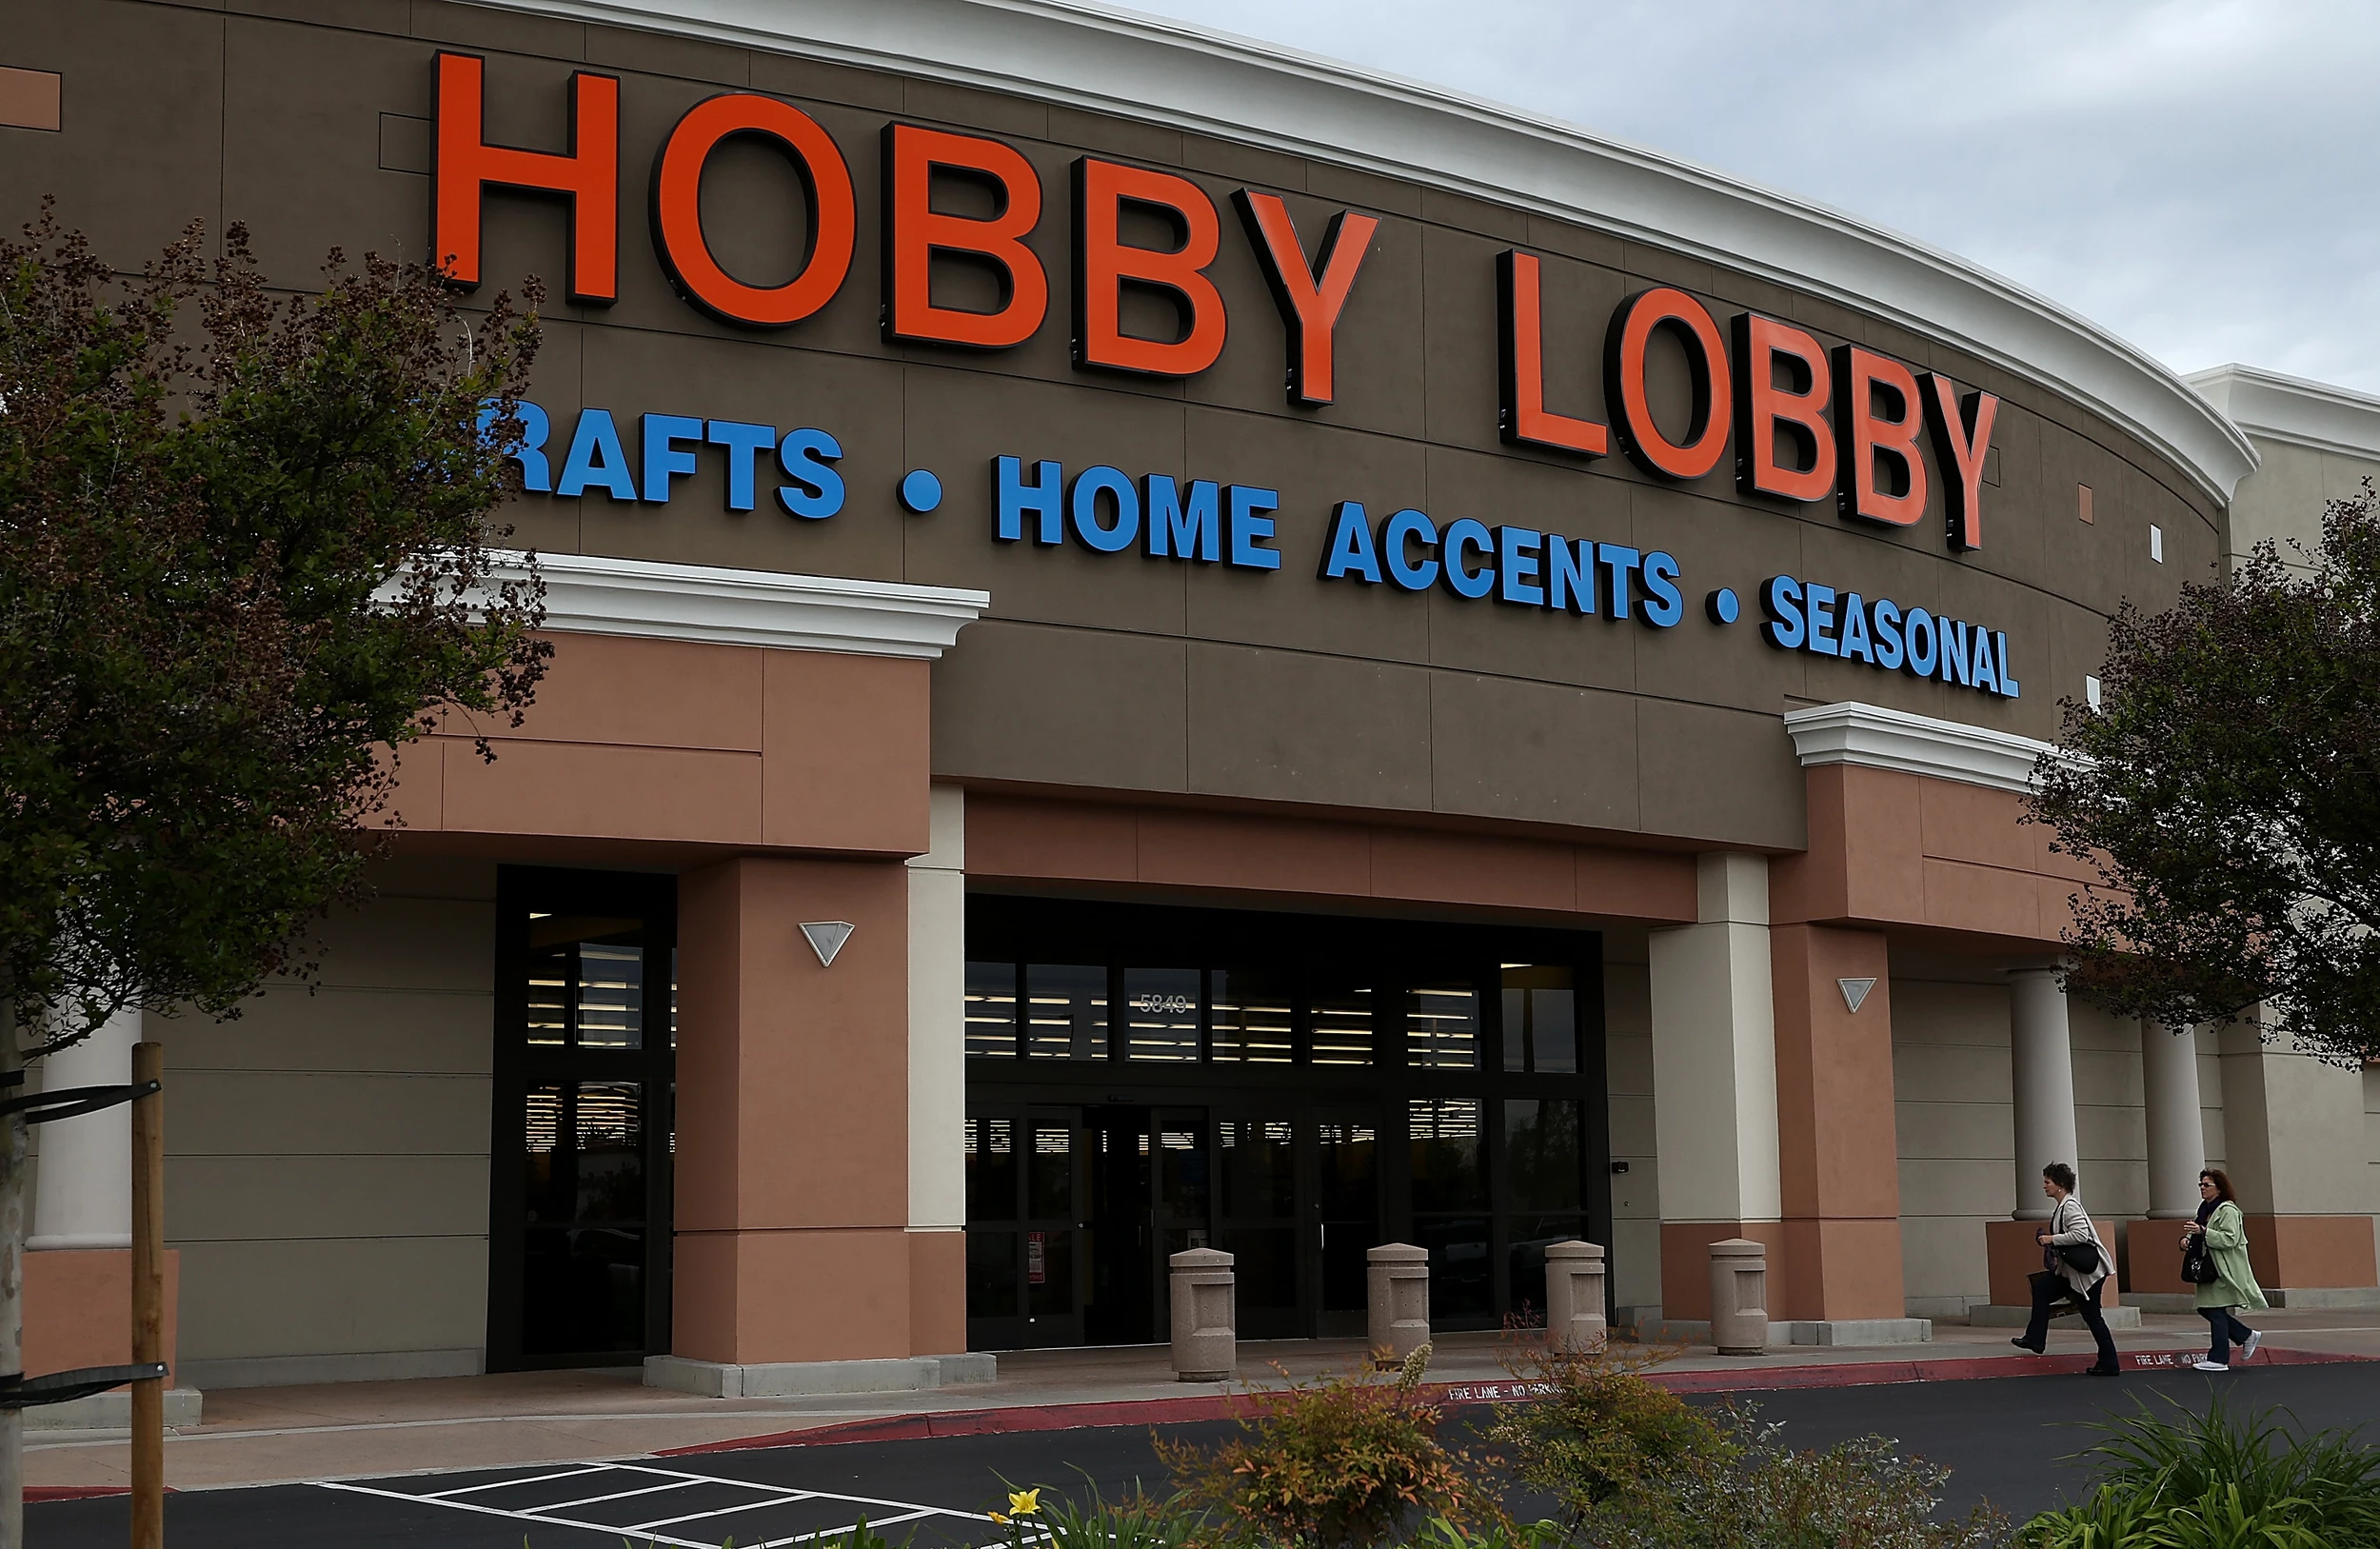 hobby lobby app discount